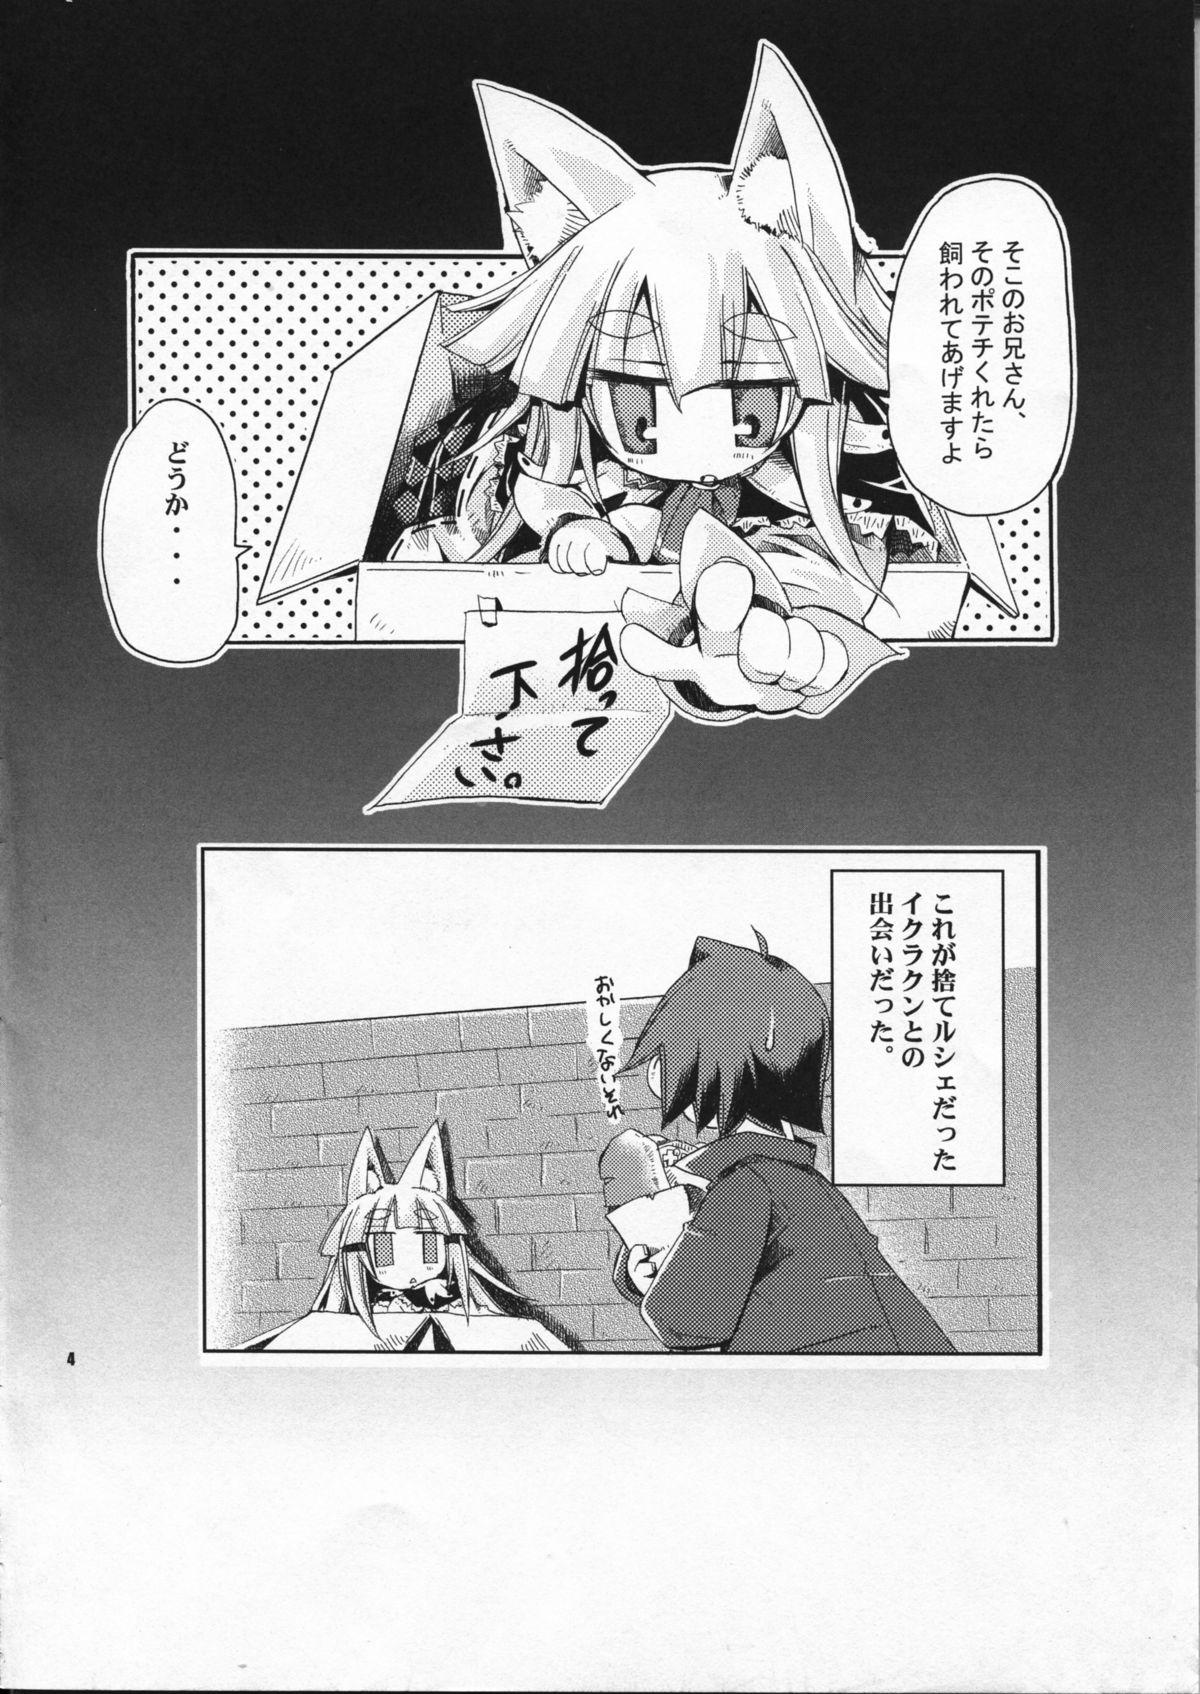 Naija Wagaya no Ikura no Kaikata - 7th dragon Taboo - Page 4